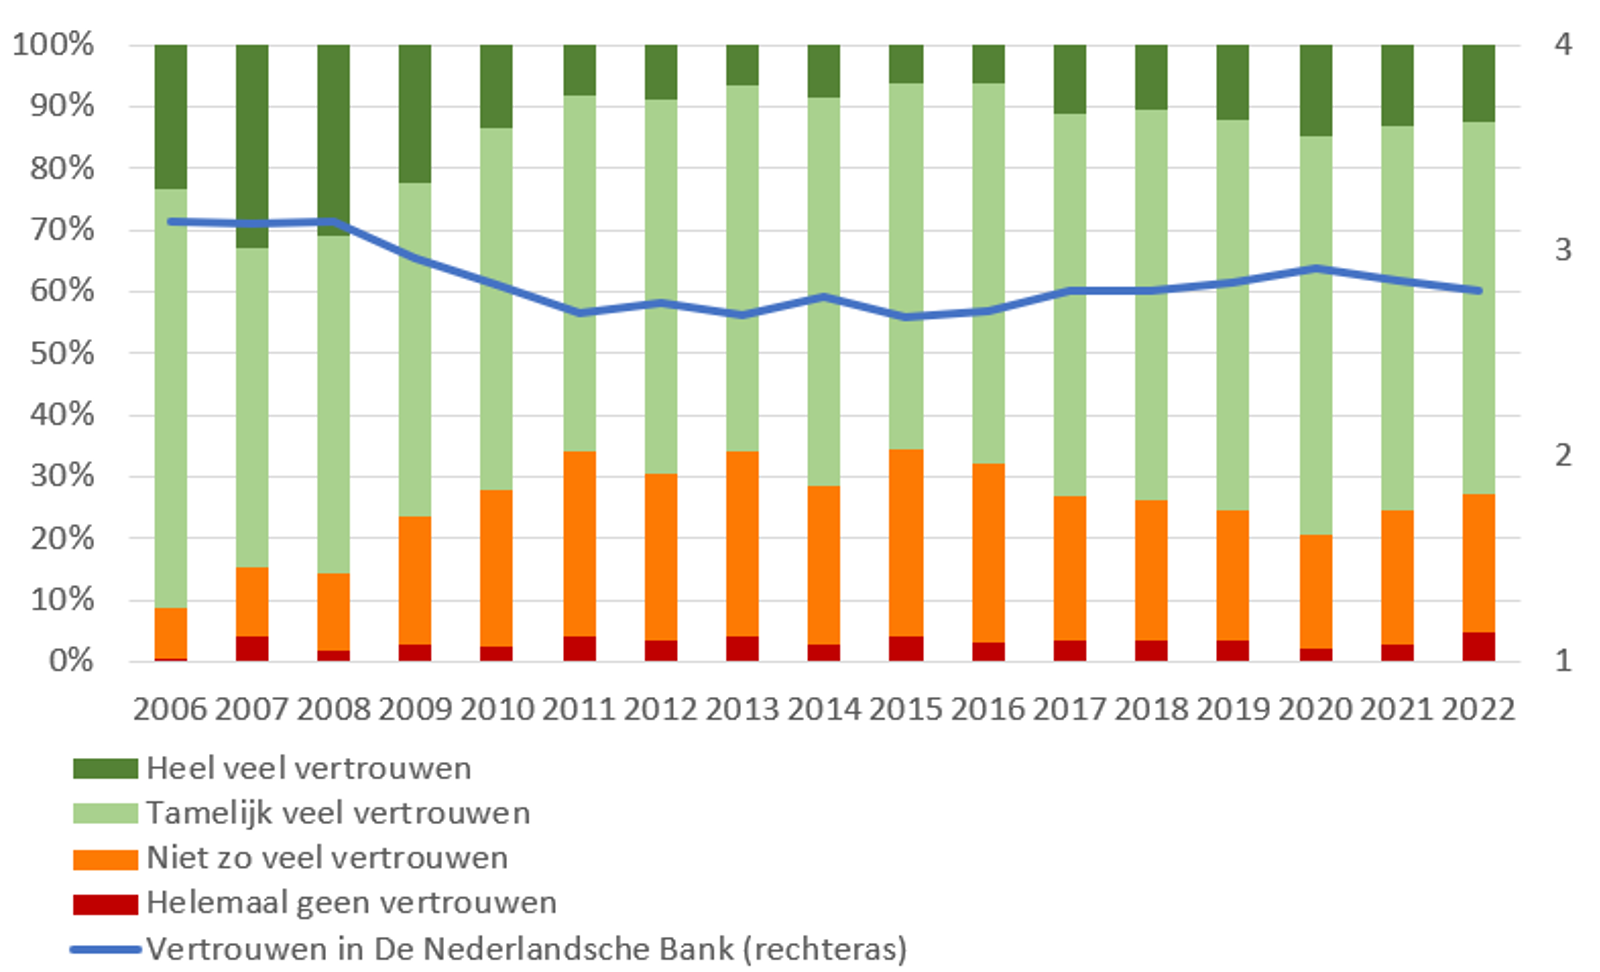 Vertrouwen in De Nederlandsche Bank